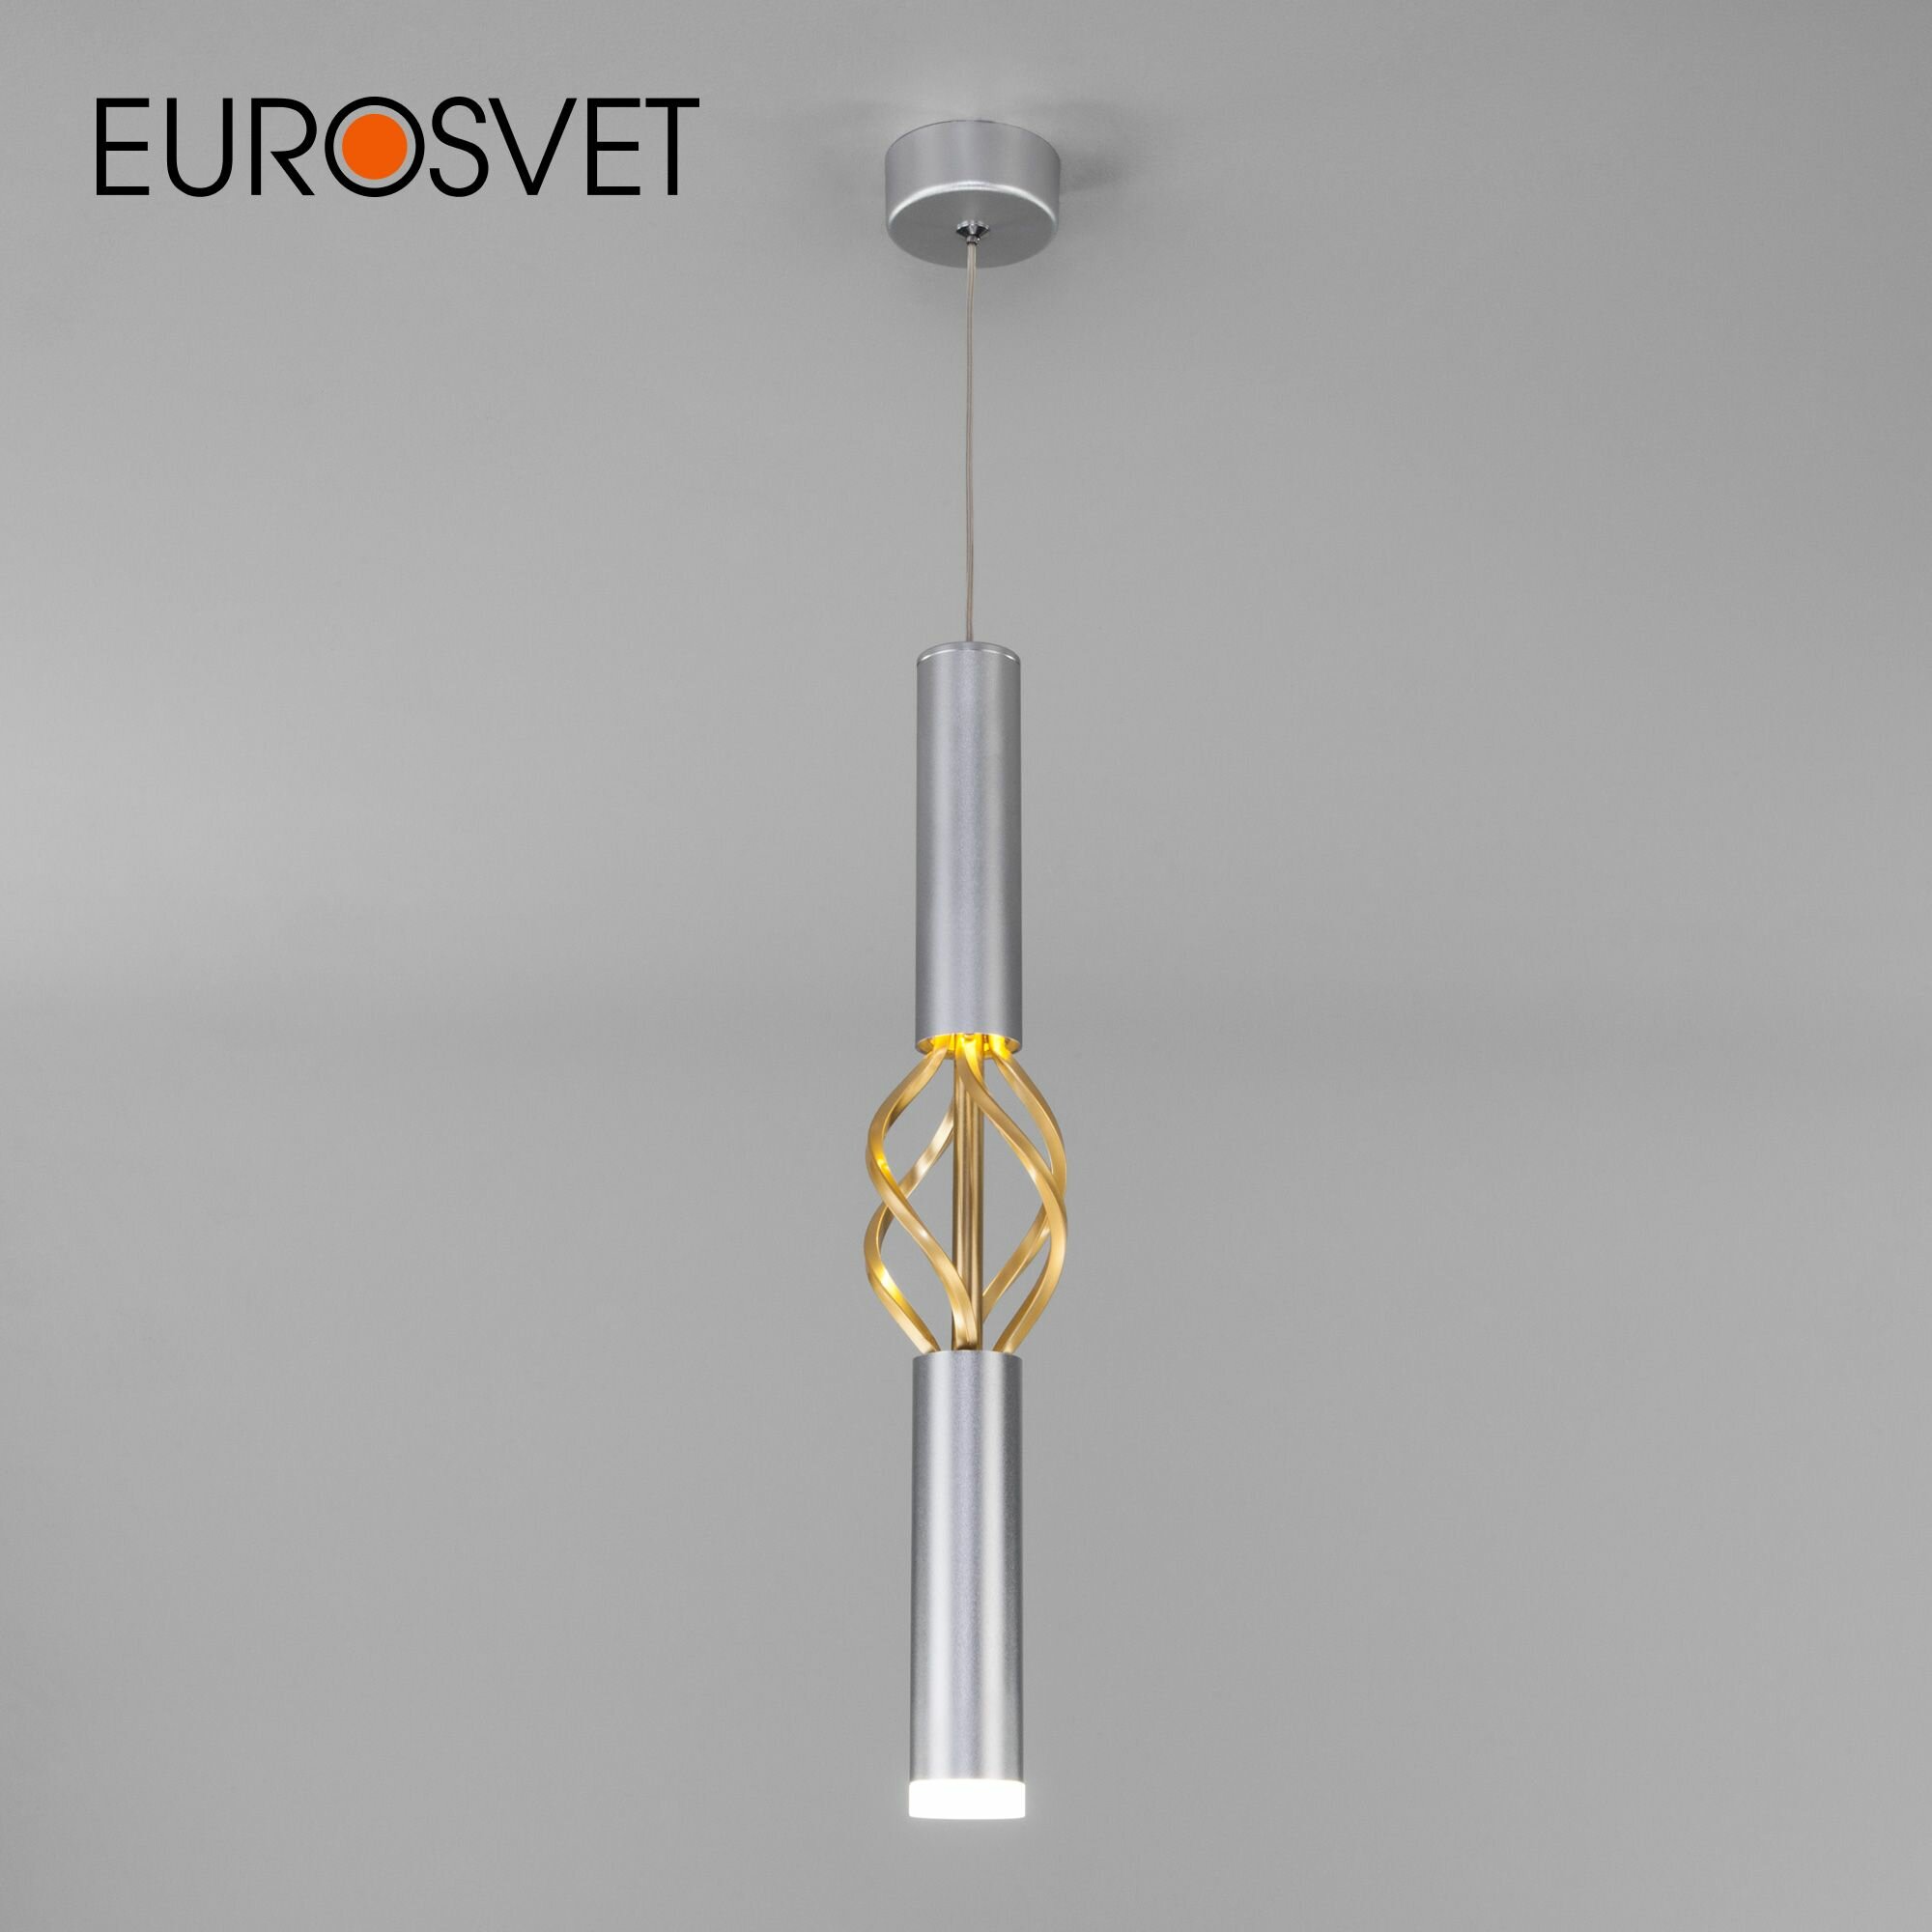 Подвесной светодиодный светильник Eurosvet Lance 50191/1 LED, 4200 К, 8 Вт, цвет матовое серебро / матовое золото